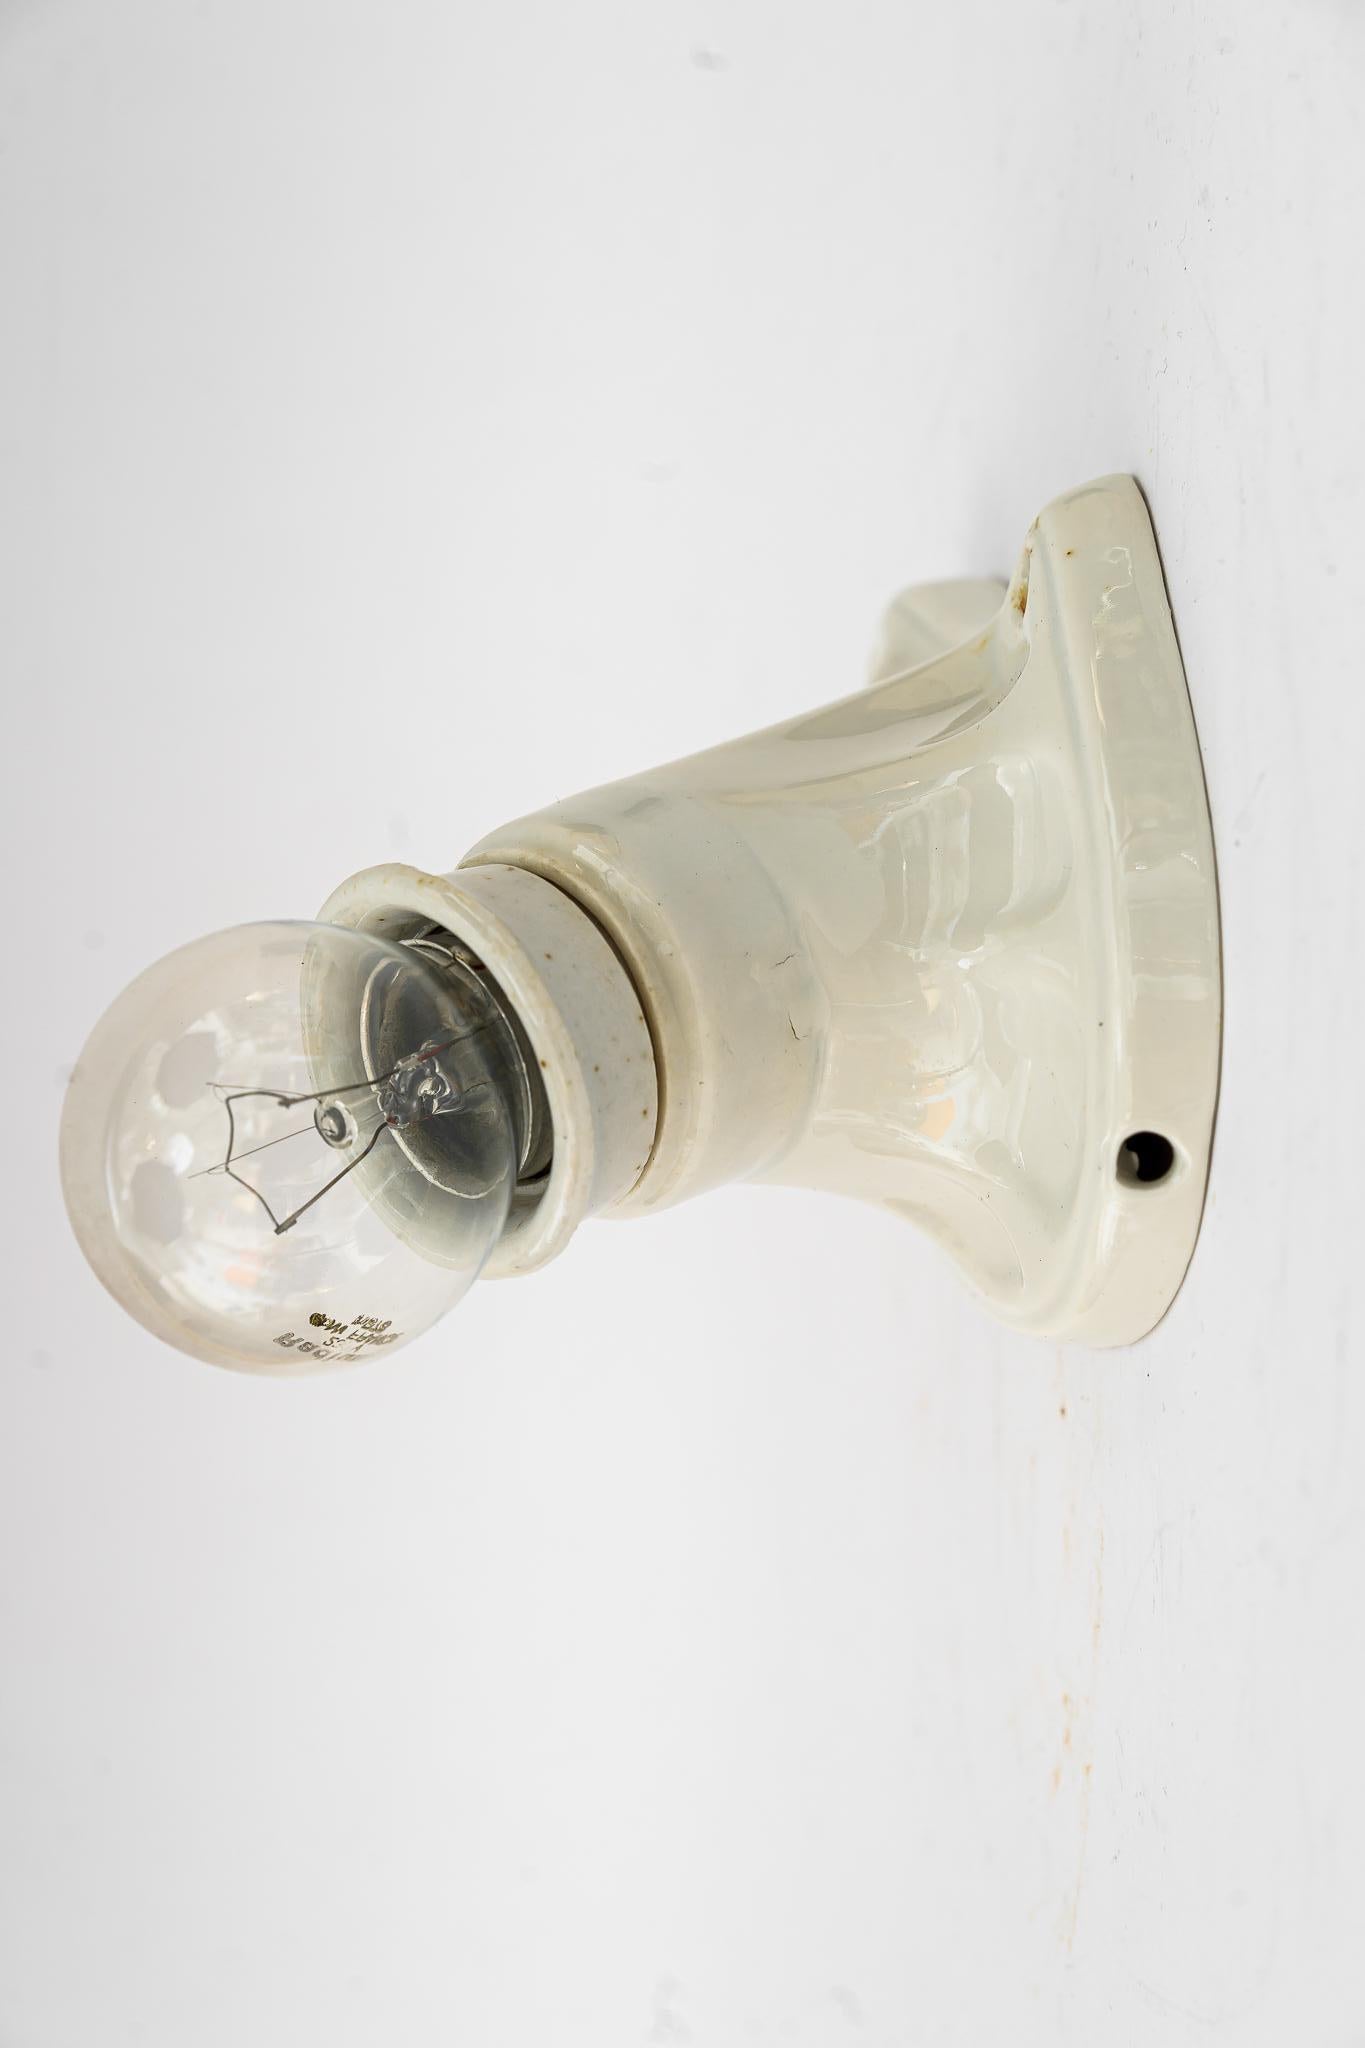 Petite lampe murale en céramique Bauhaus vienne vers 1920
L'ampoule n'est pas incluse.
Etat original.